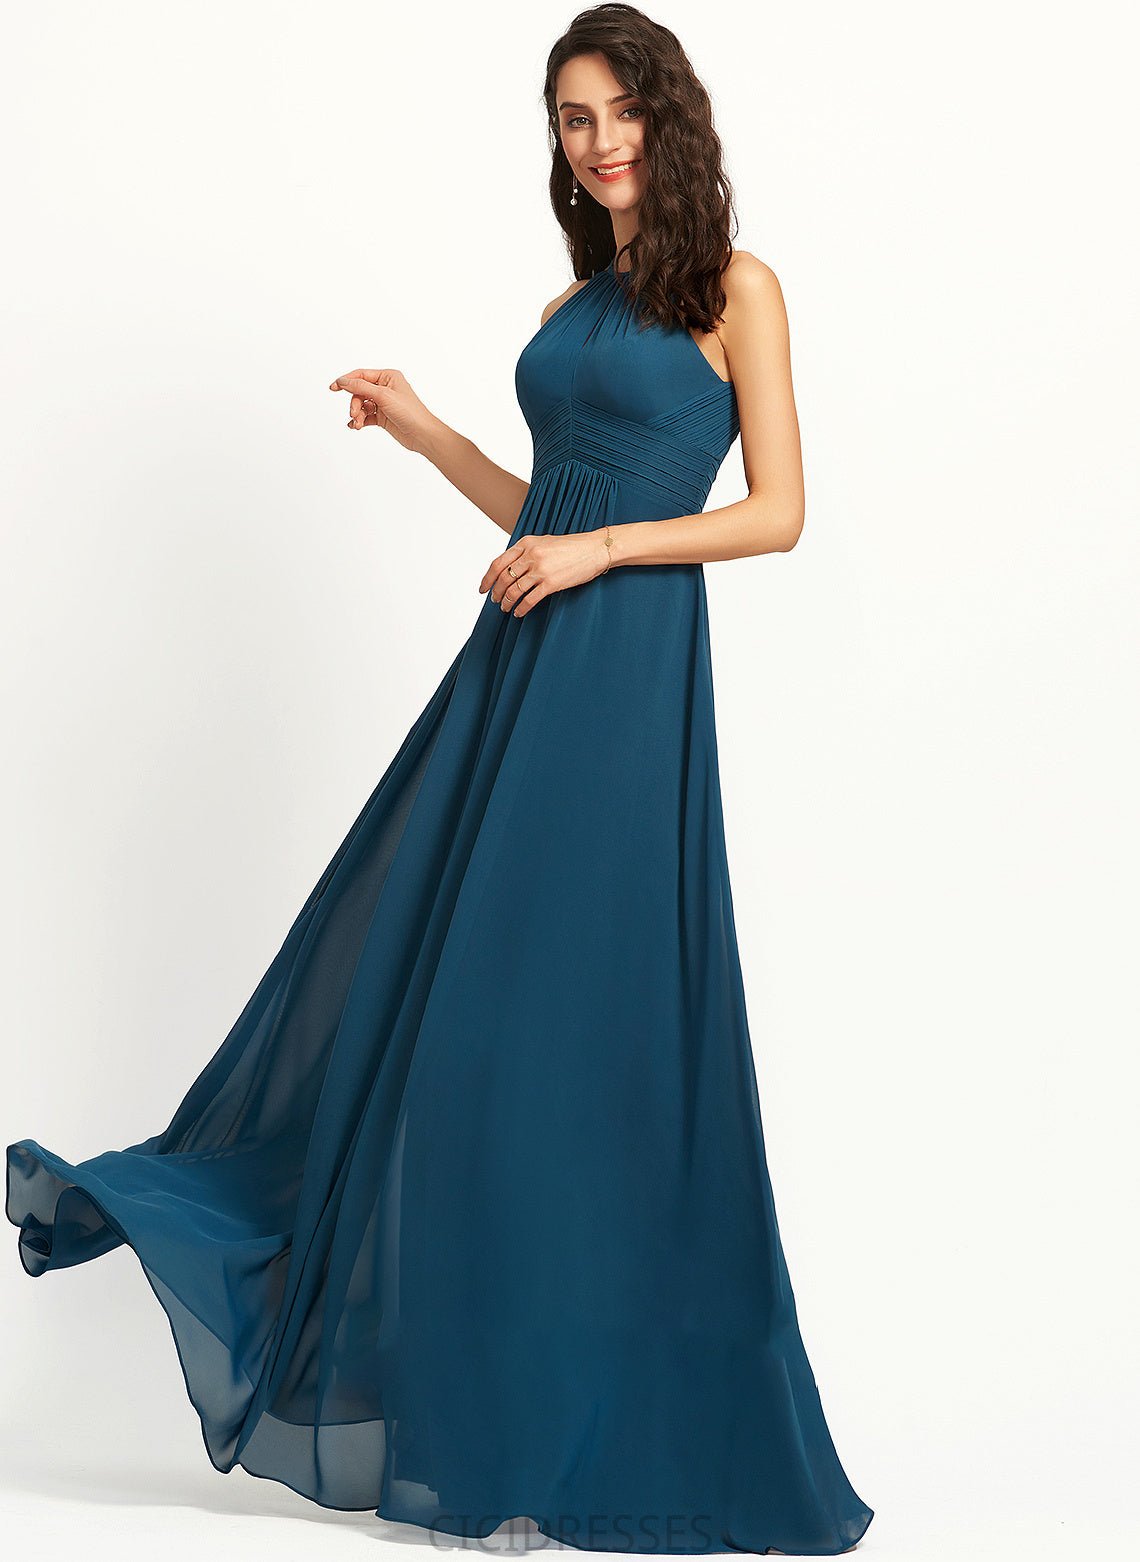 A-Line Neckline ScoopNeck Fabric Floor-Length Length Silhouette Ruffle Embellishment Zion A-Line/Princess Natural Waist Bridesmaid Dresses